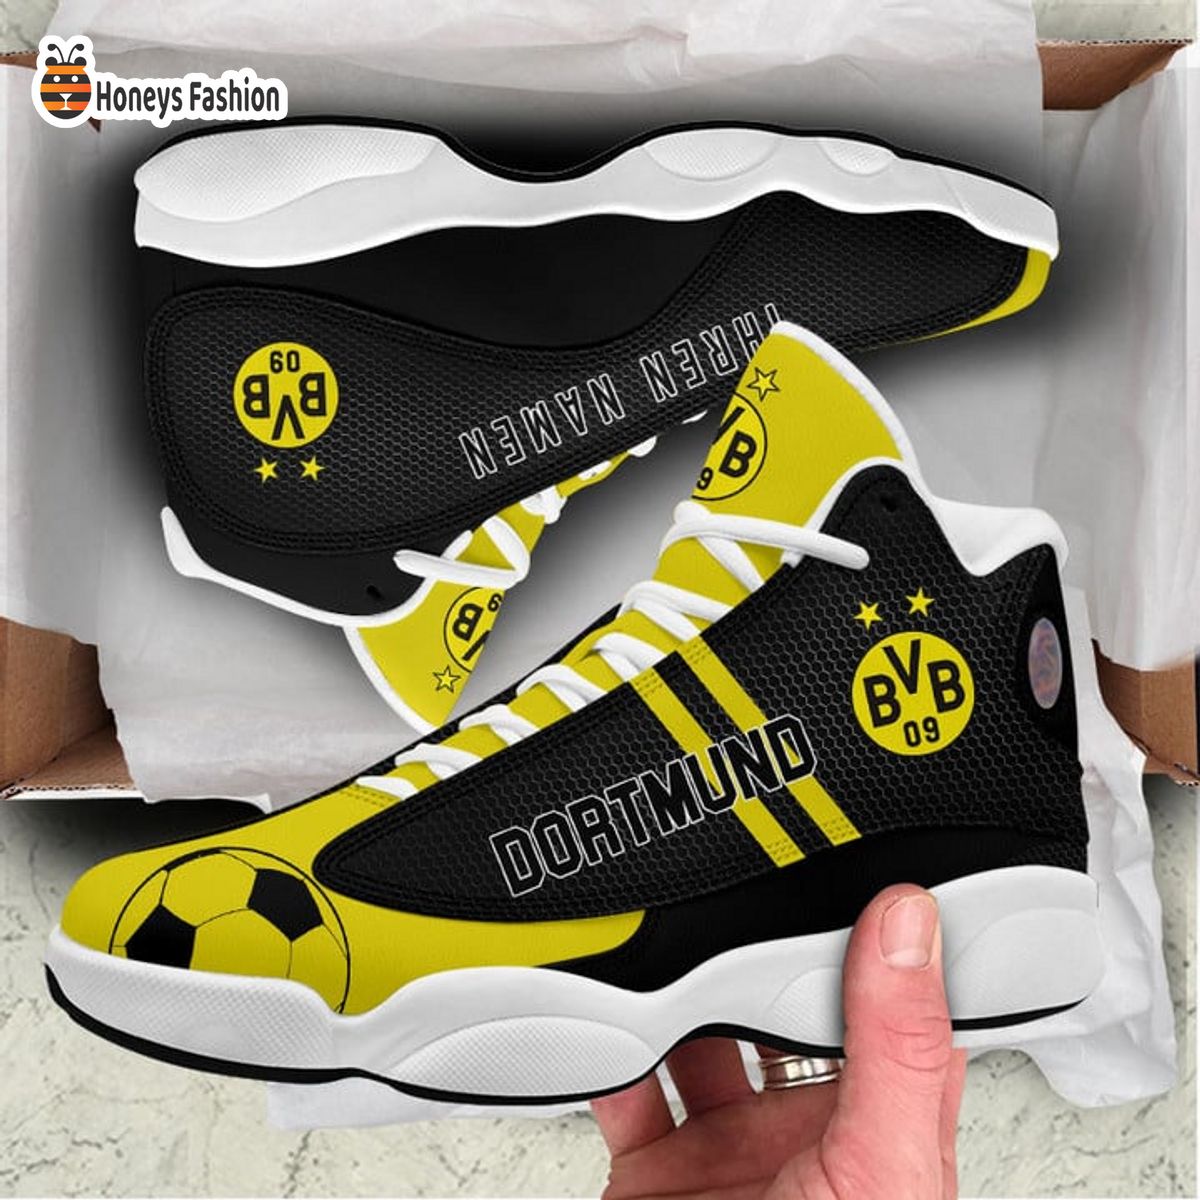 Borussia Dortmund Air Jordan 13 Schuhe